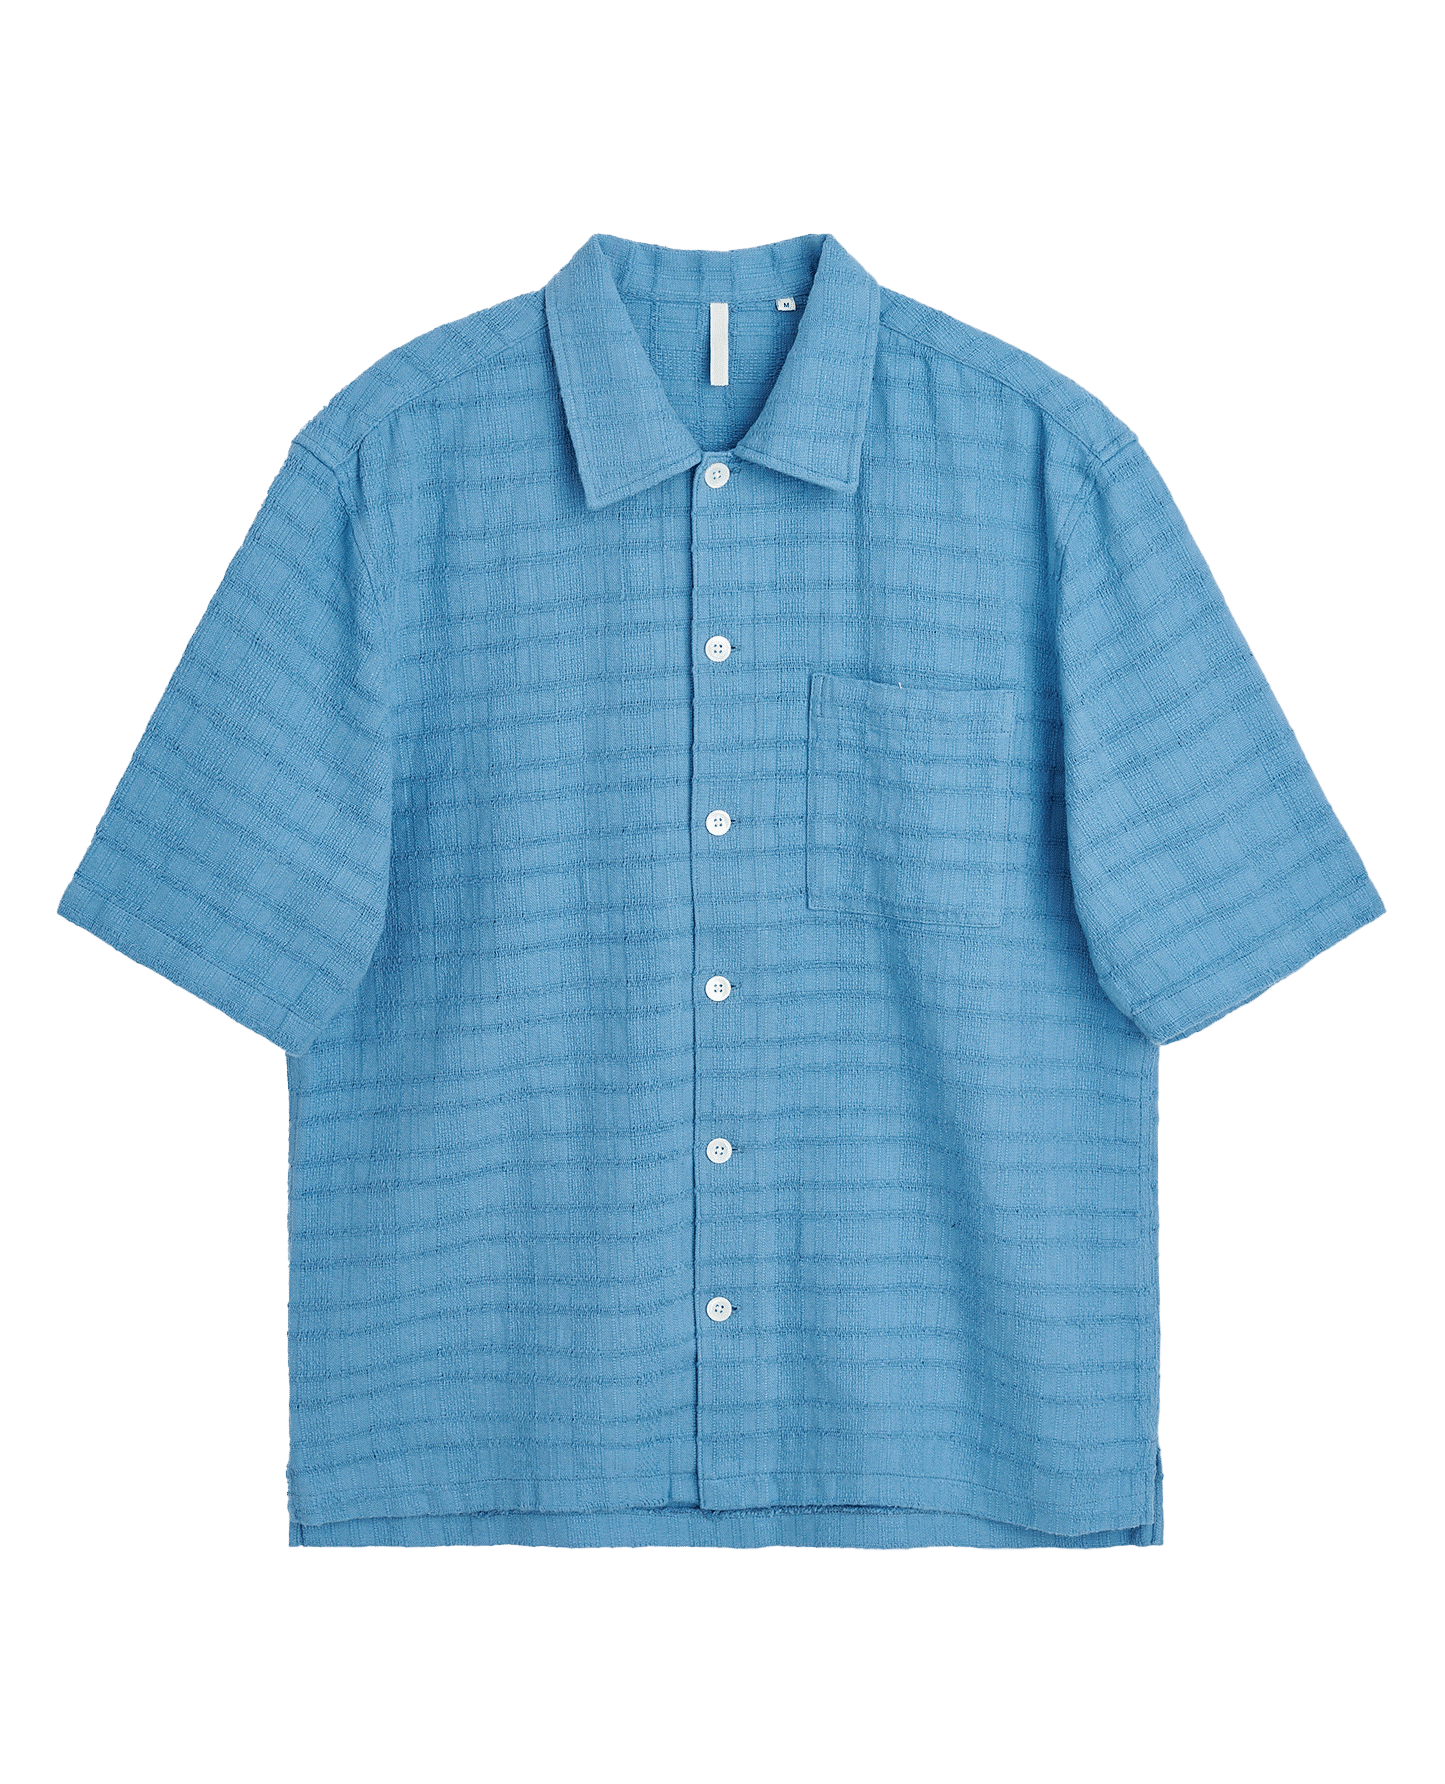 SUNFLOWER 1187 Spacey SS Shirt - Blue